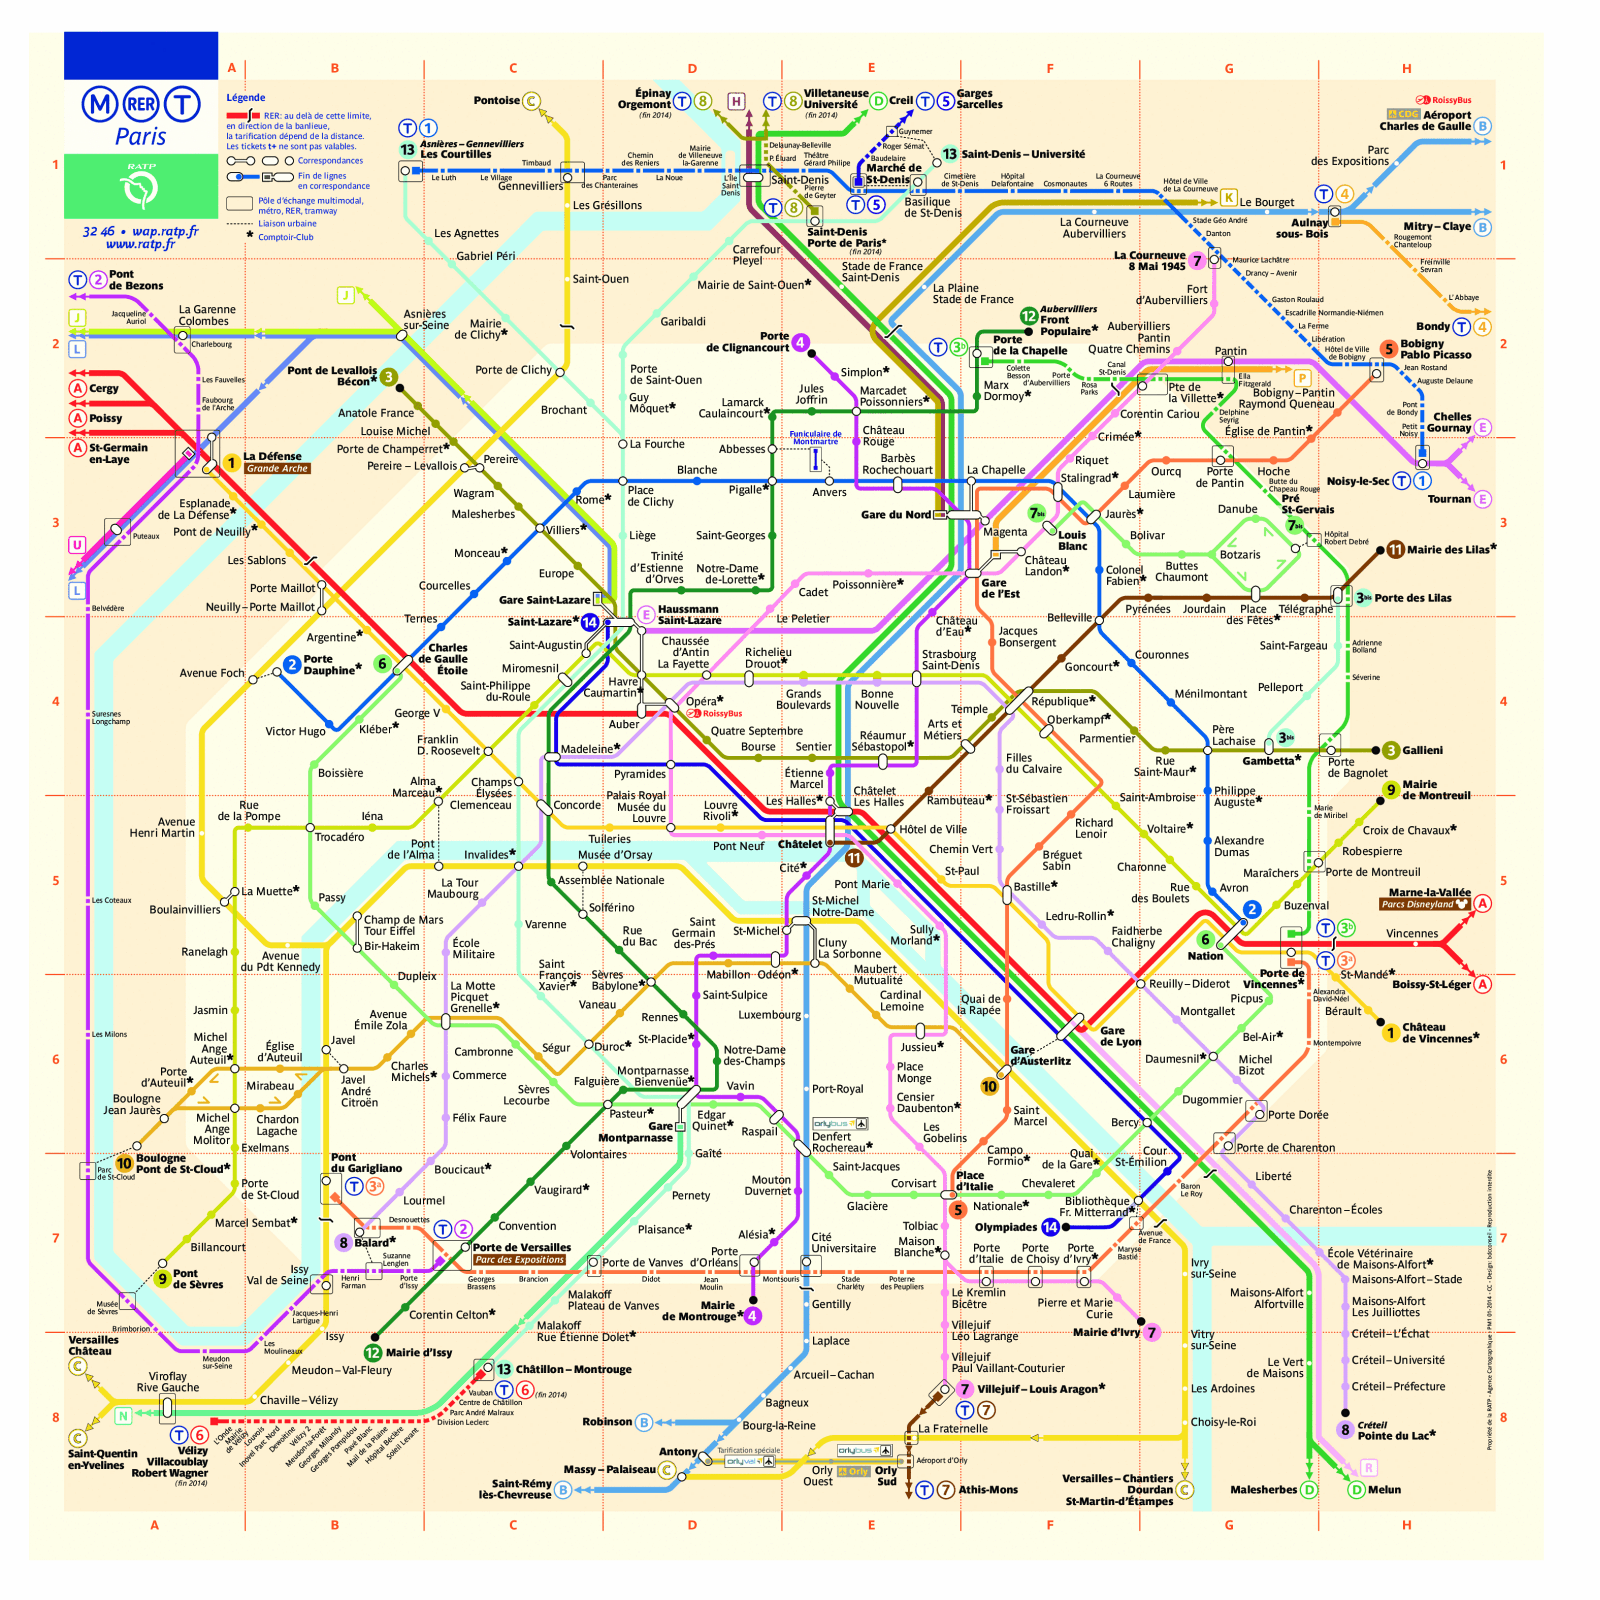 paris-metro-map-and-travel-guide-tourbytransit